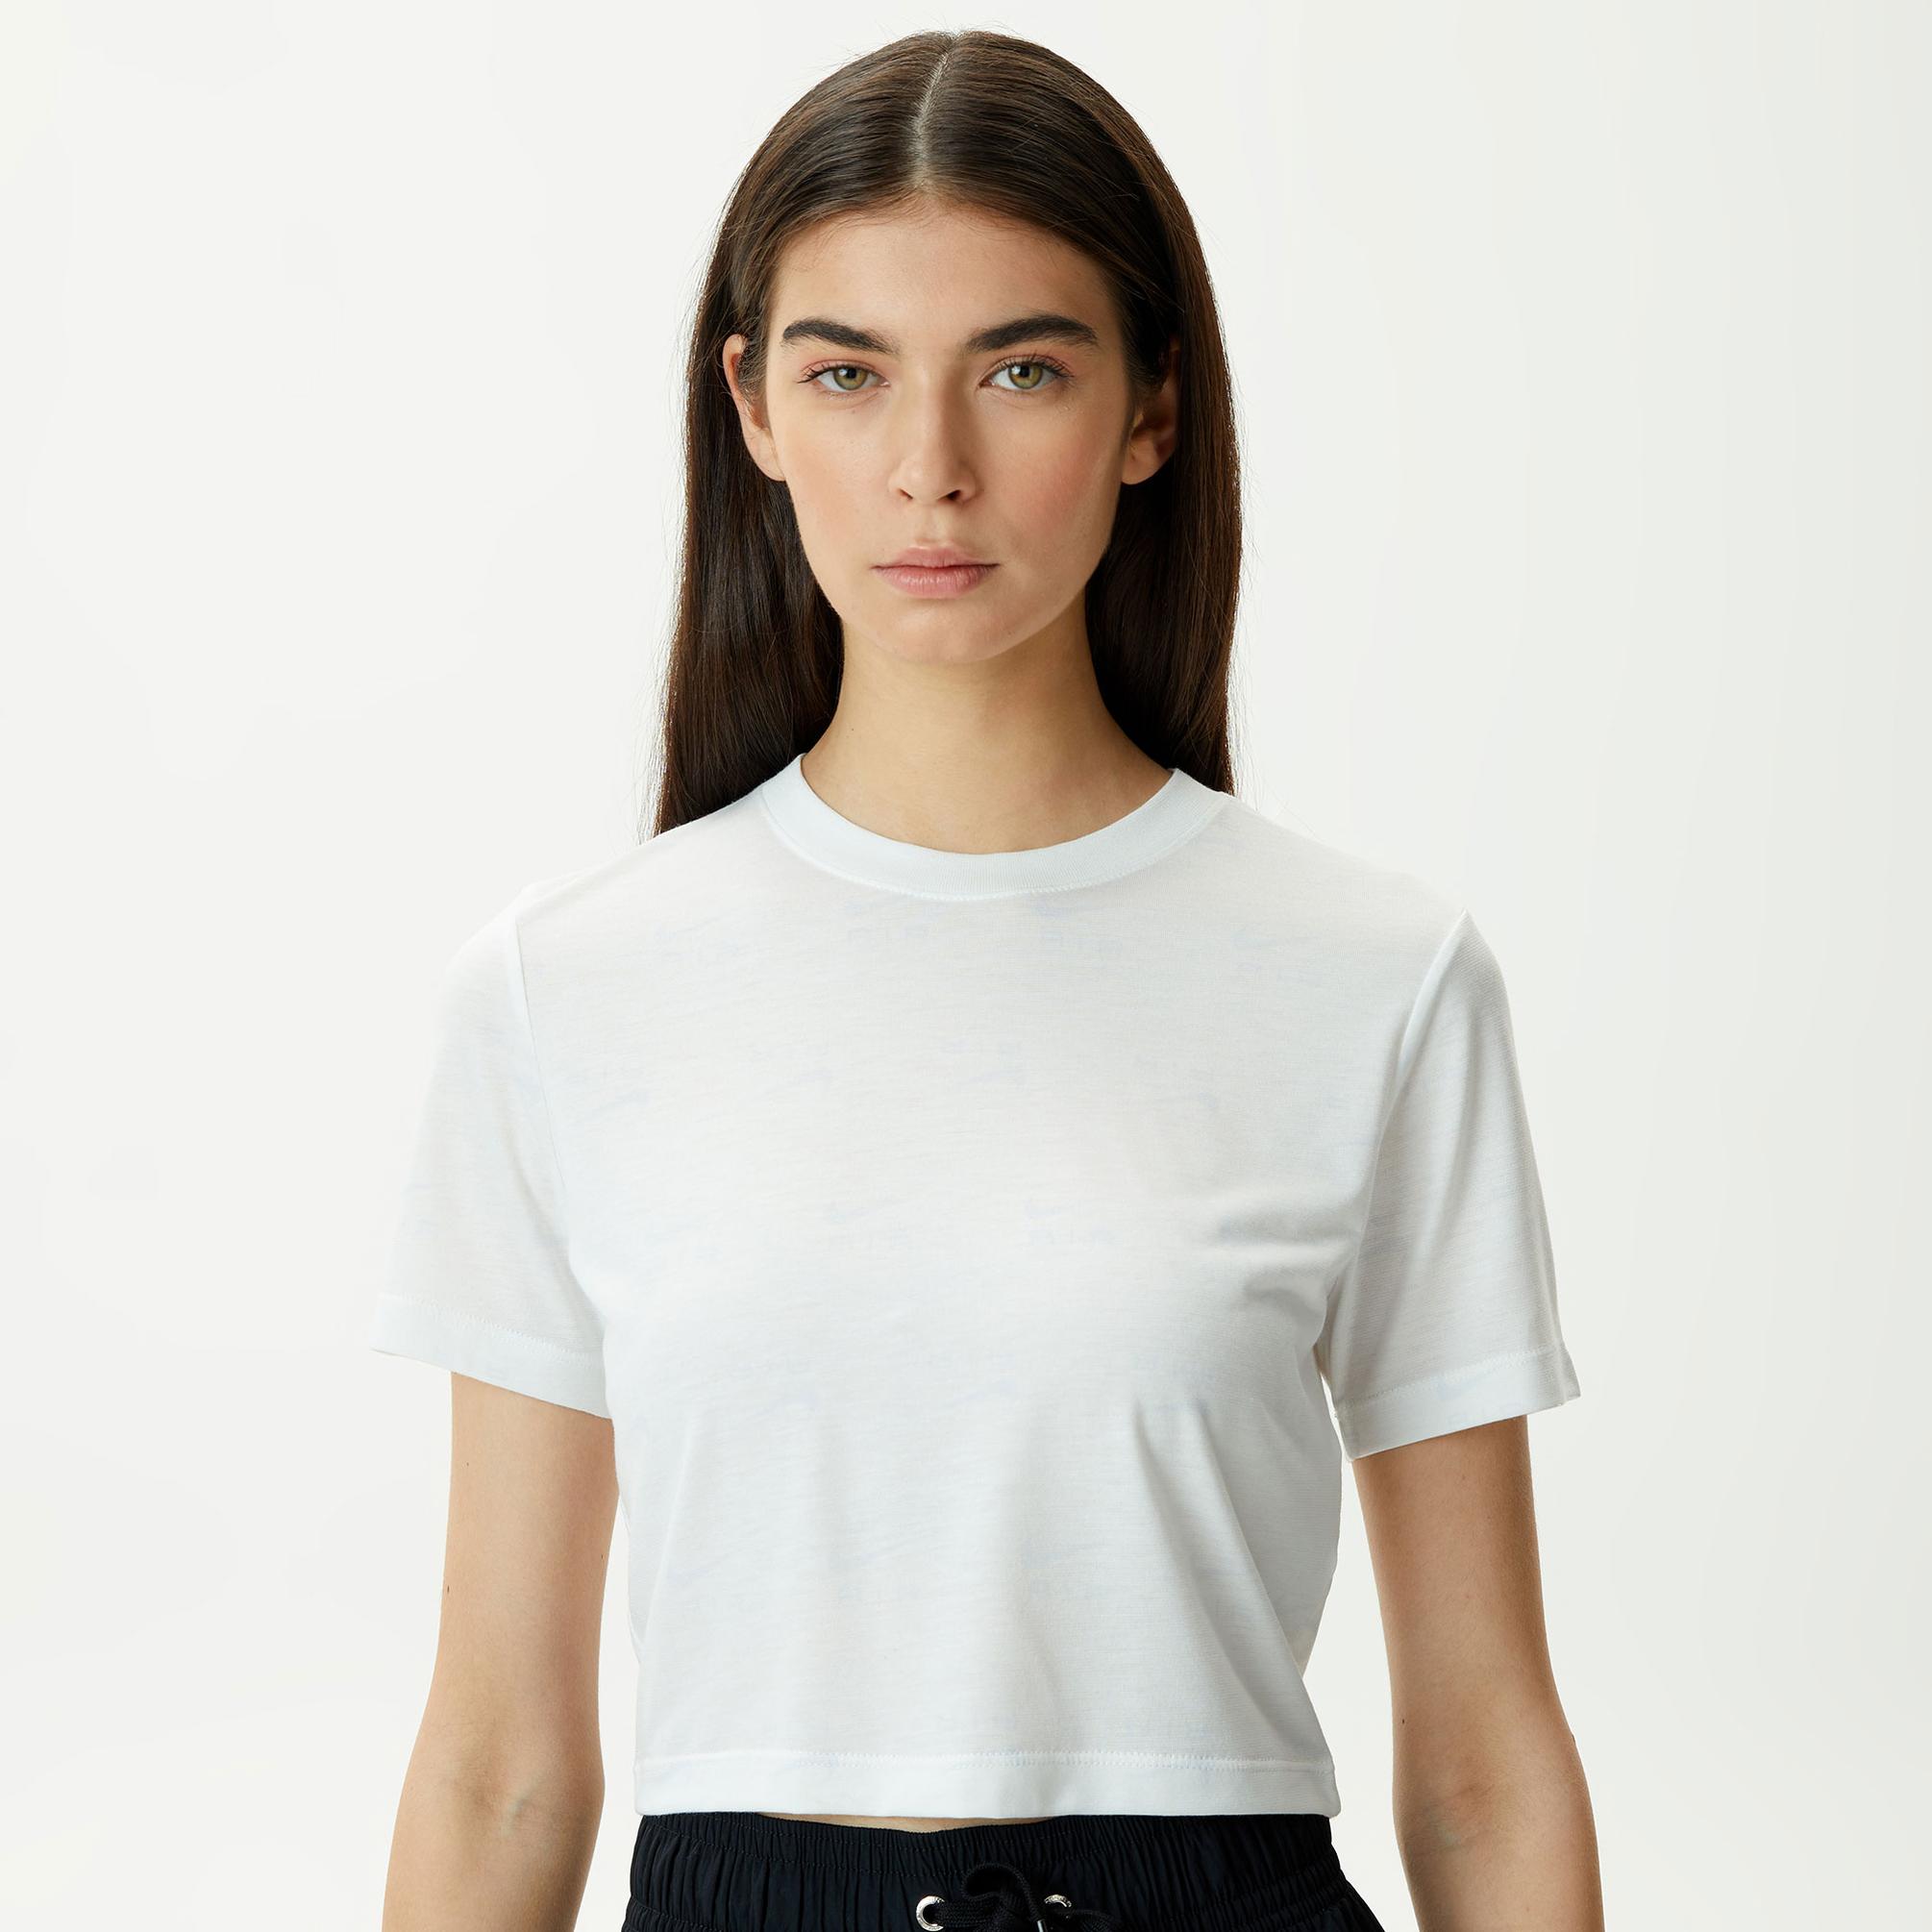  Nike Sportswear Air Slim Crp Kadın Krem Crop T-Shirt